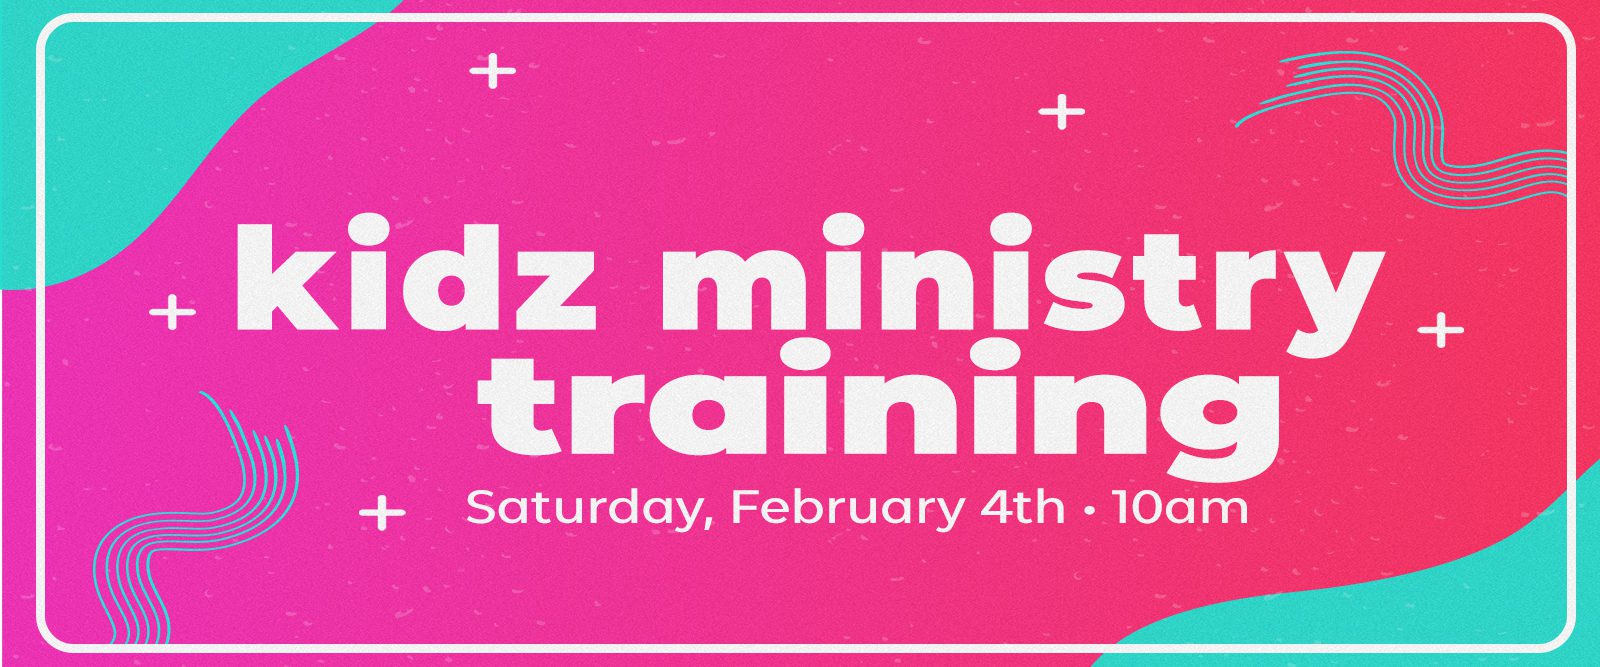 Kidz Ministry Training